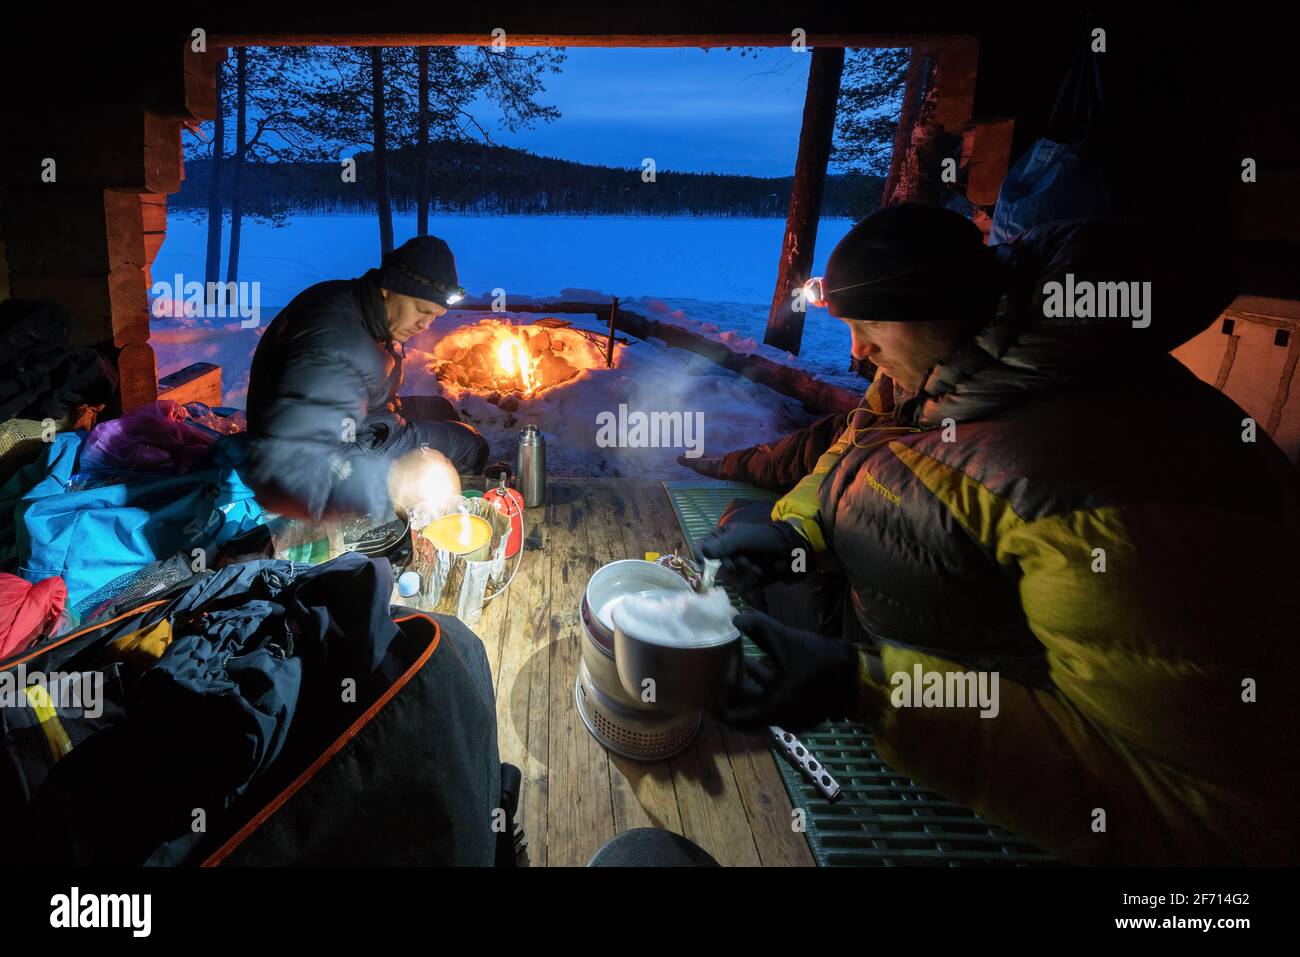 Evening at Alempi Kiertämäjärvi Lake lean-to, Sodankylä, Lapland, Finland Stock Photo